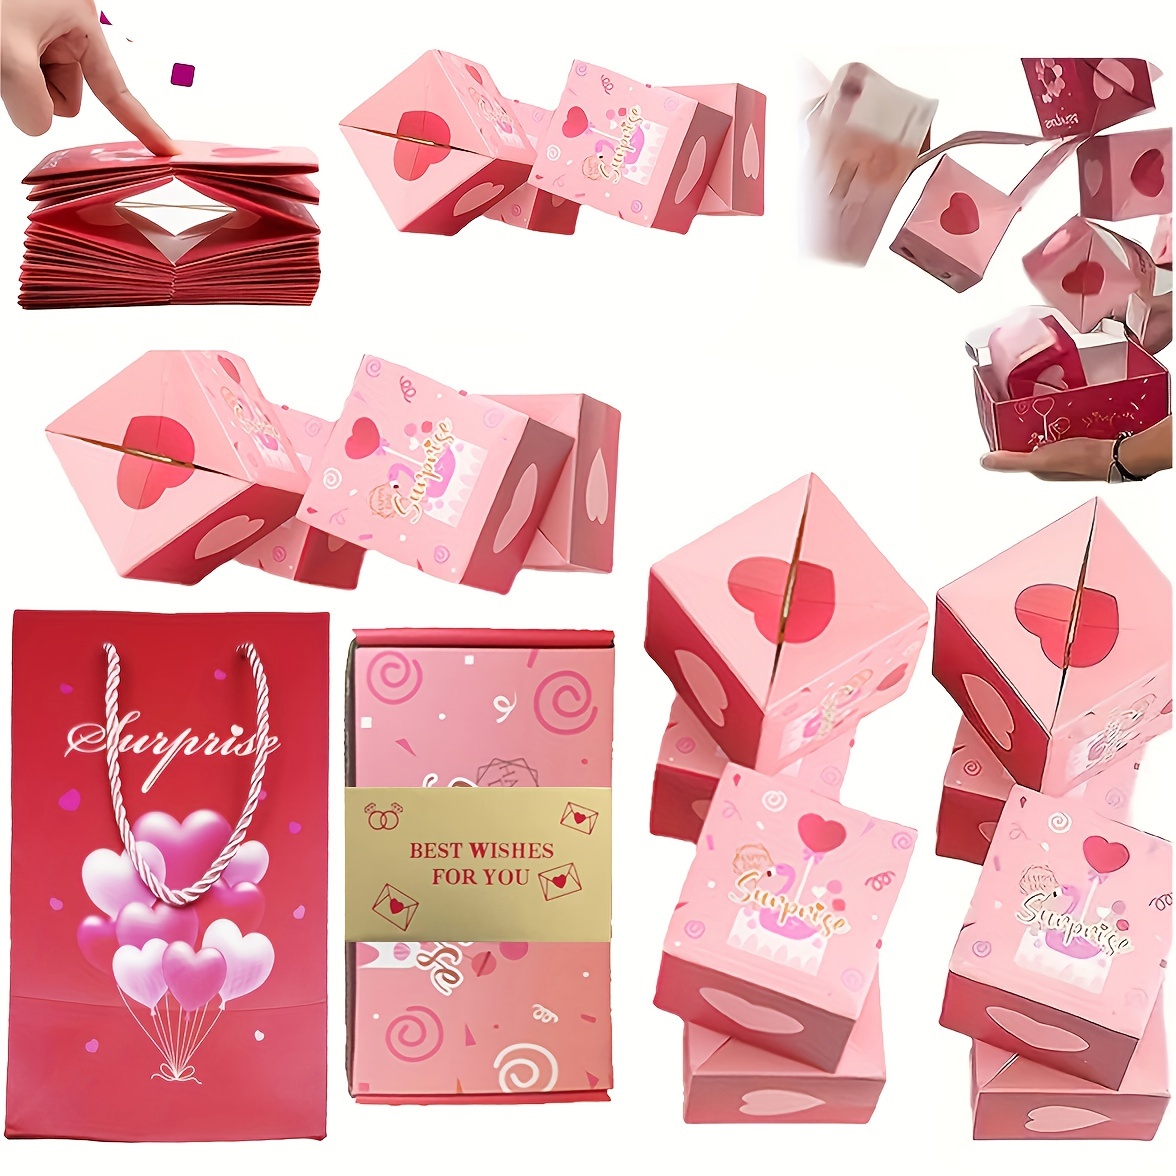  Caja sorpresa, caja de regalo única plegable con sobre rojo,  caja de regalo explosiva para regalos, caja de regalo en efectivo y  explosión (20 cubos desplegables, los mejores deseos para ti) 